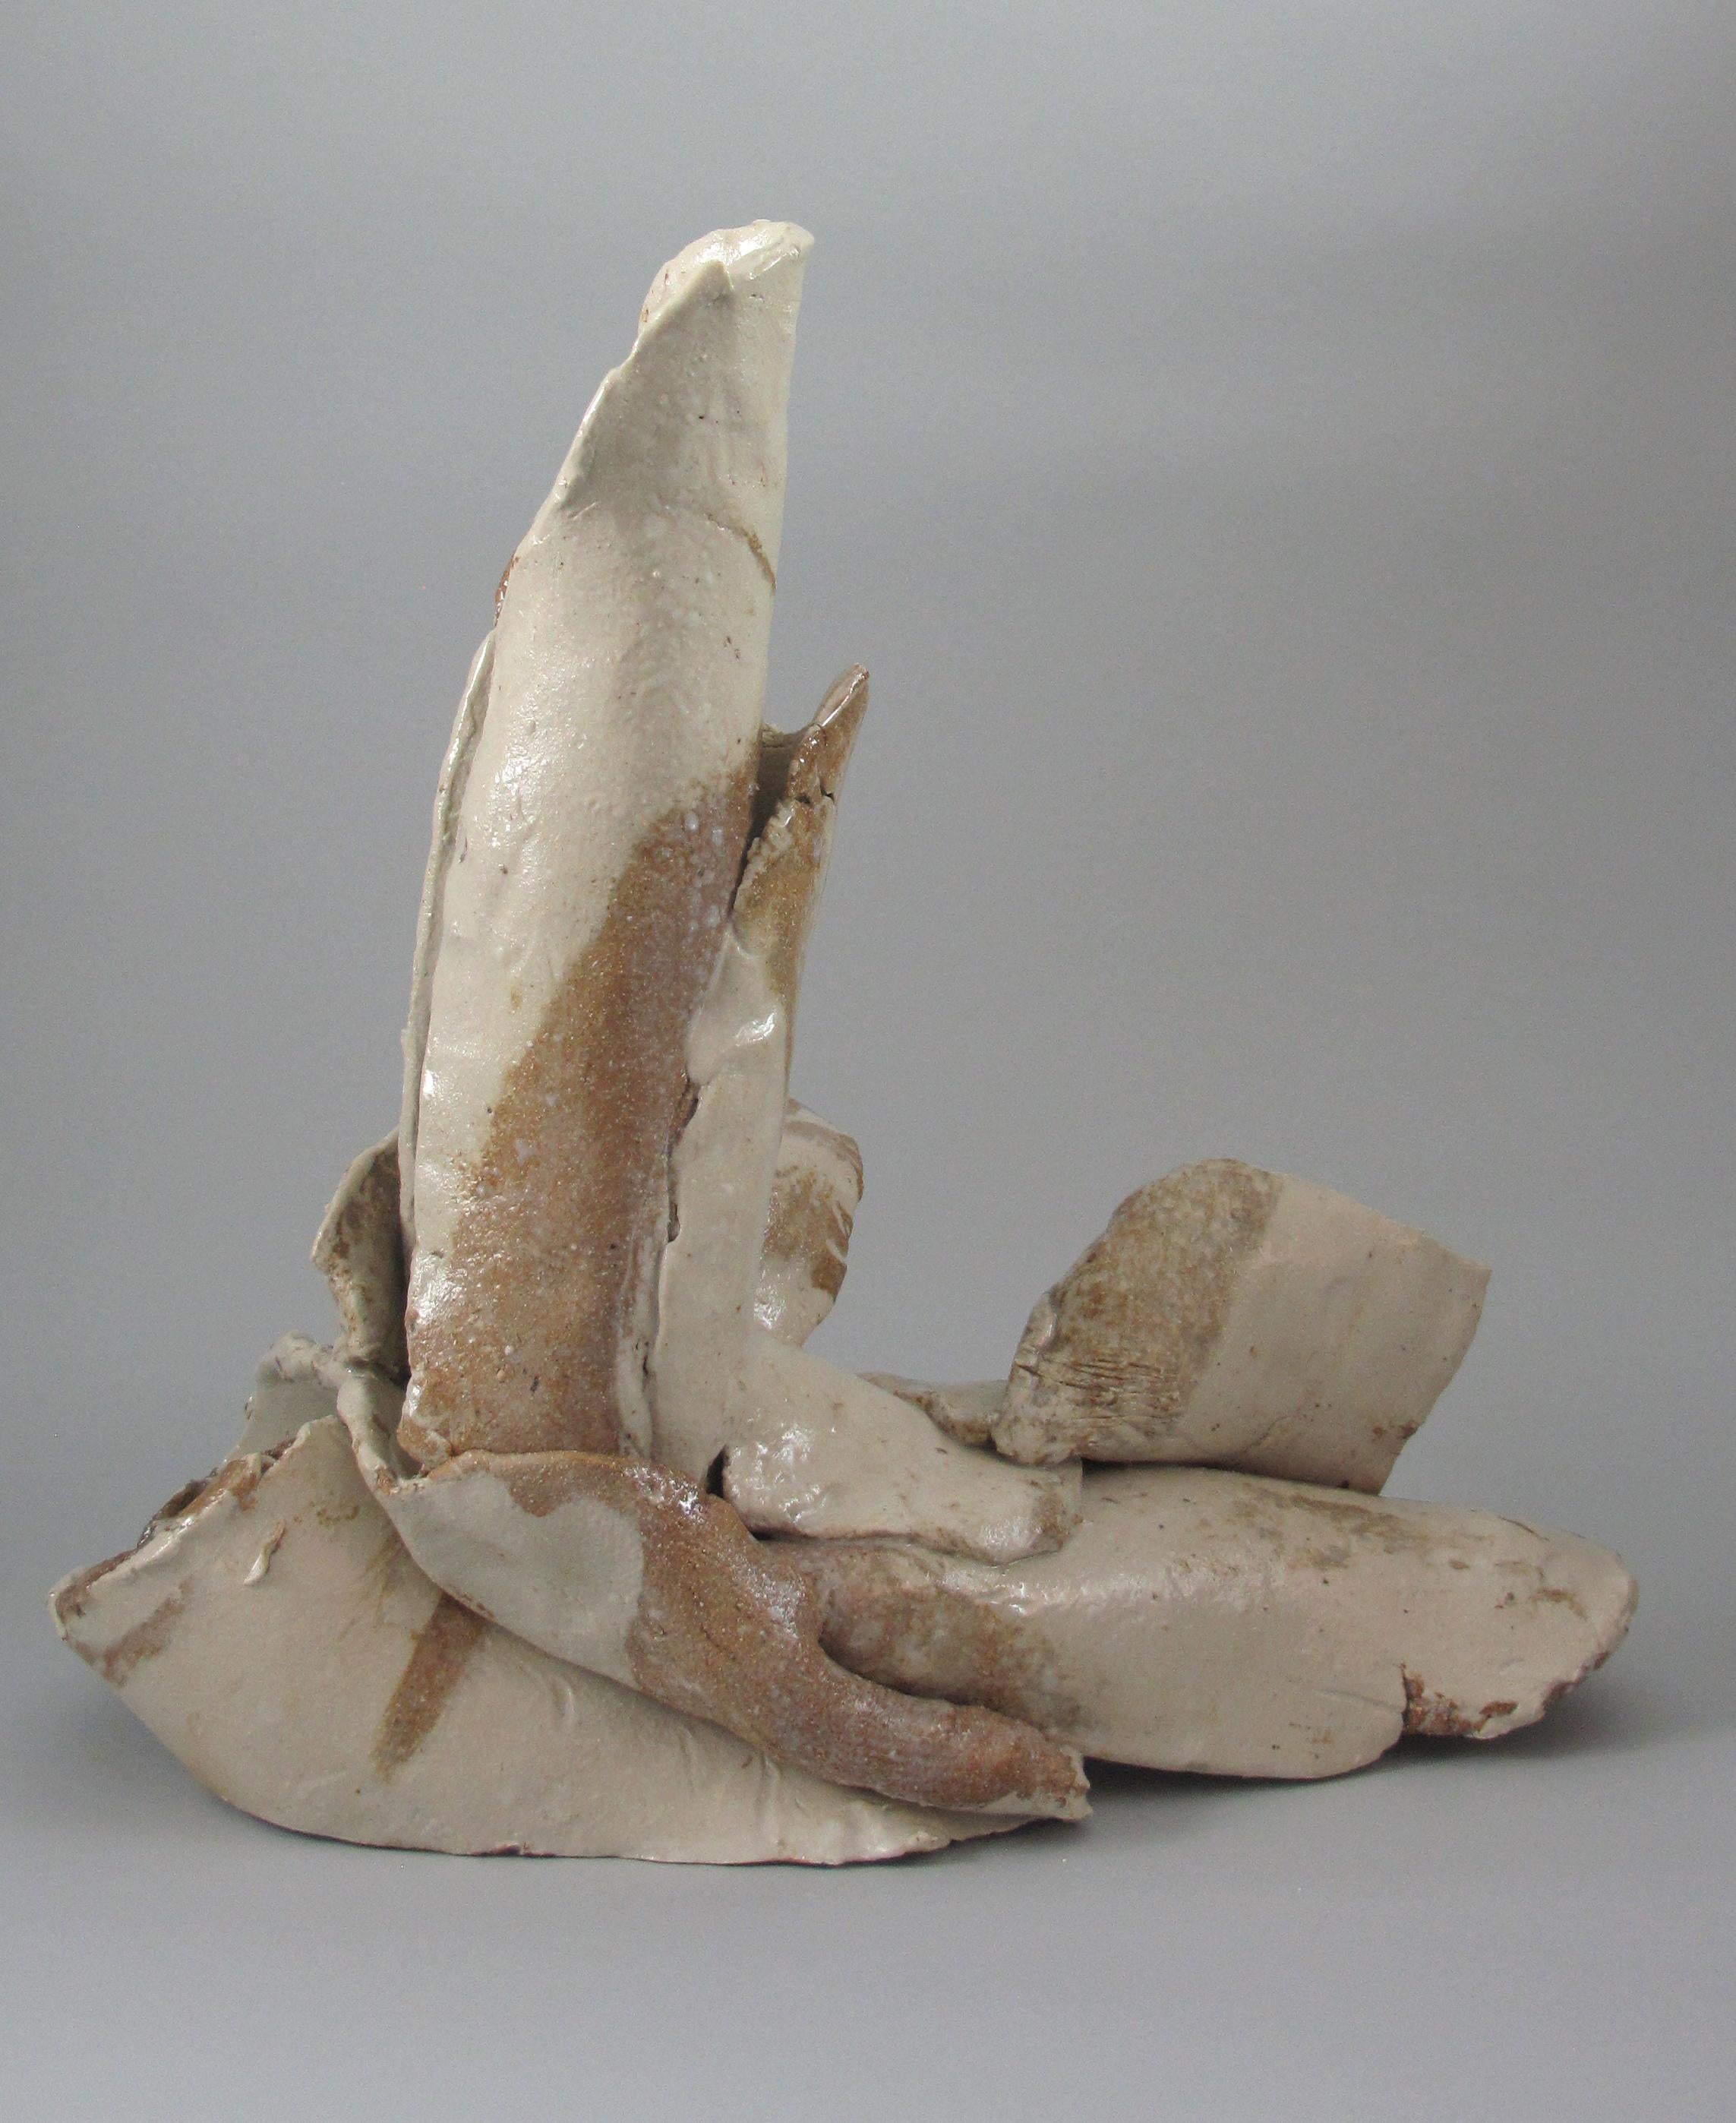 "Fragment", gestural, ceramic, sculpture, white, brown, stoneware